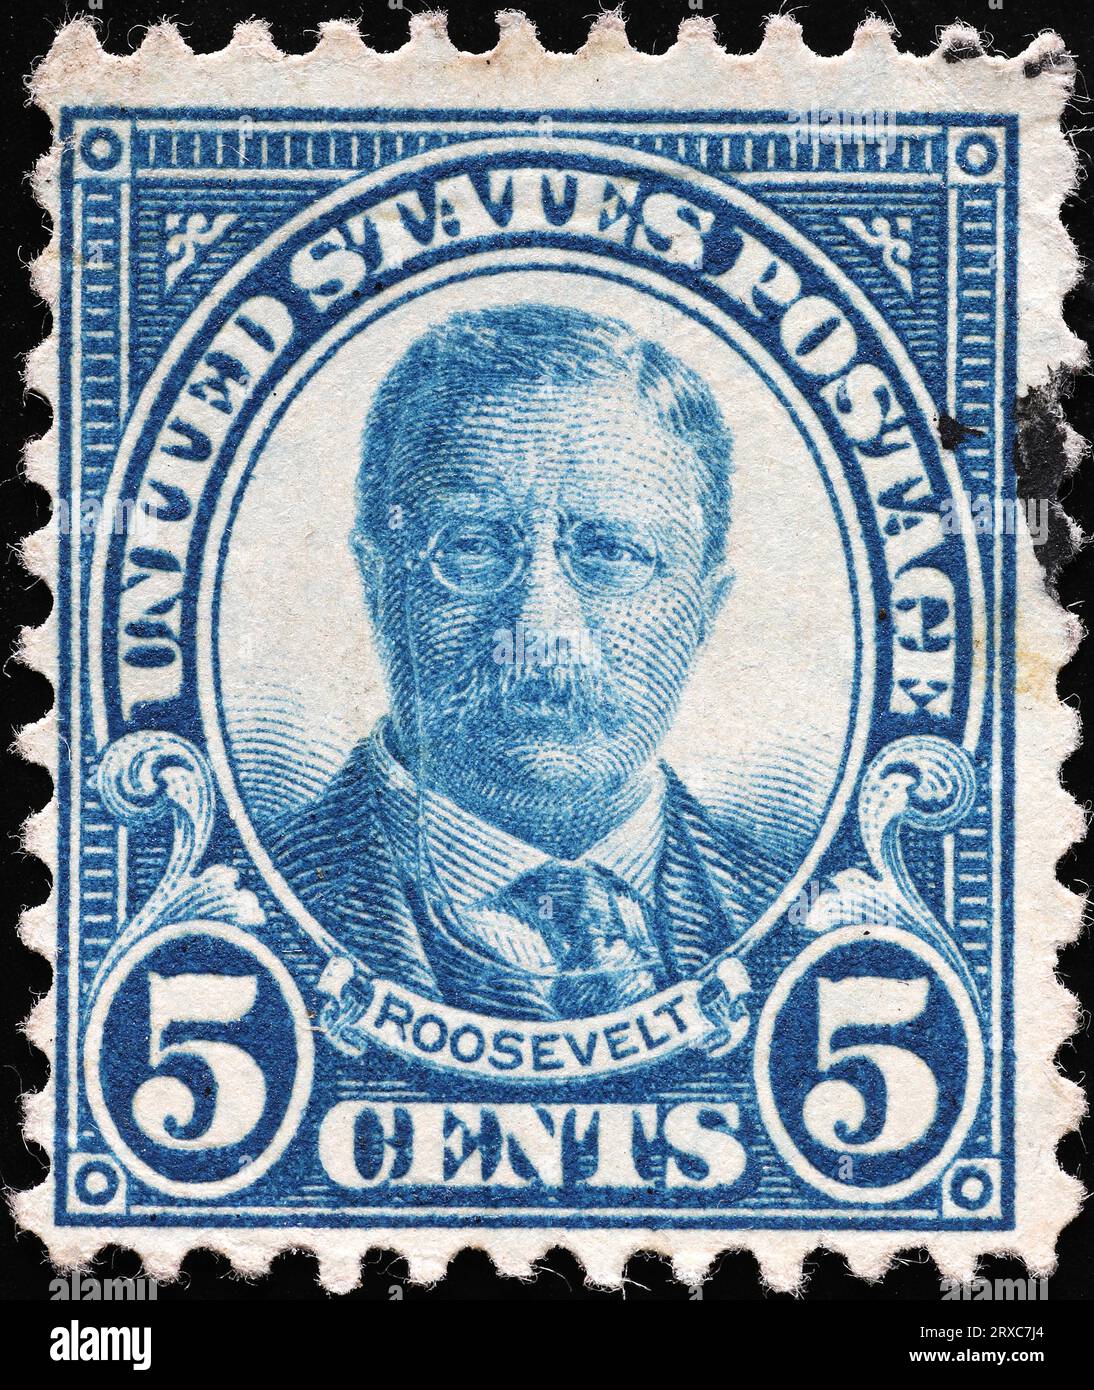 Le président AMÉRICAIN Theodore Rooosevelt sur un vieux timbre-poste Banque D'Images